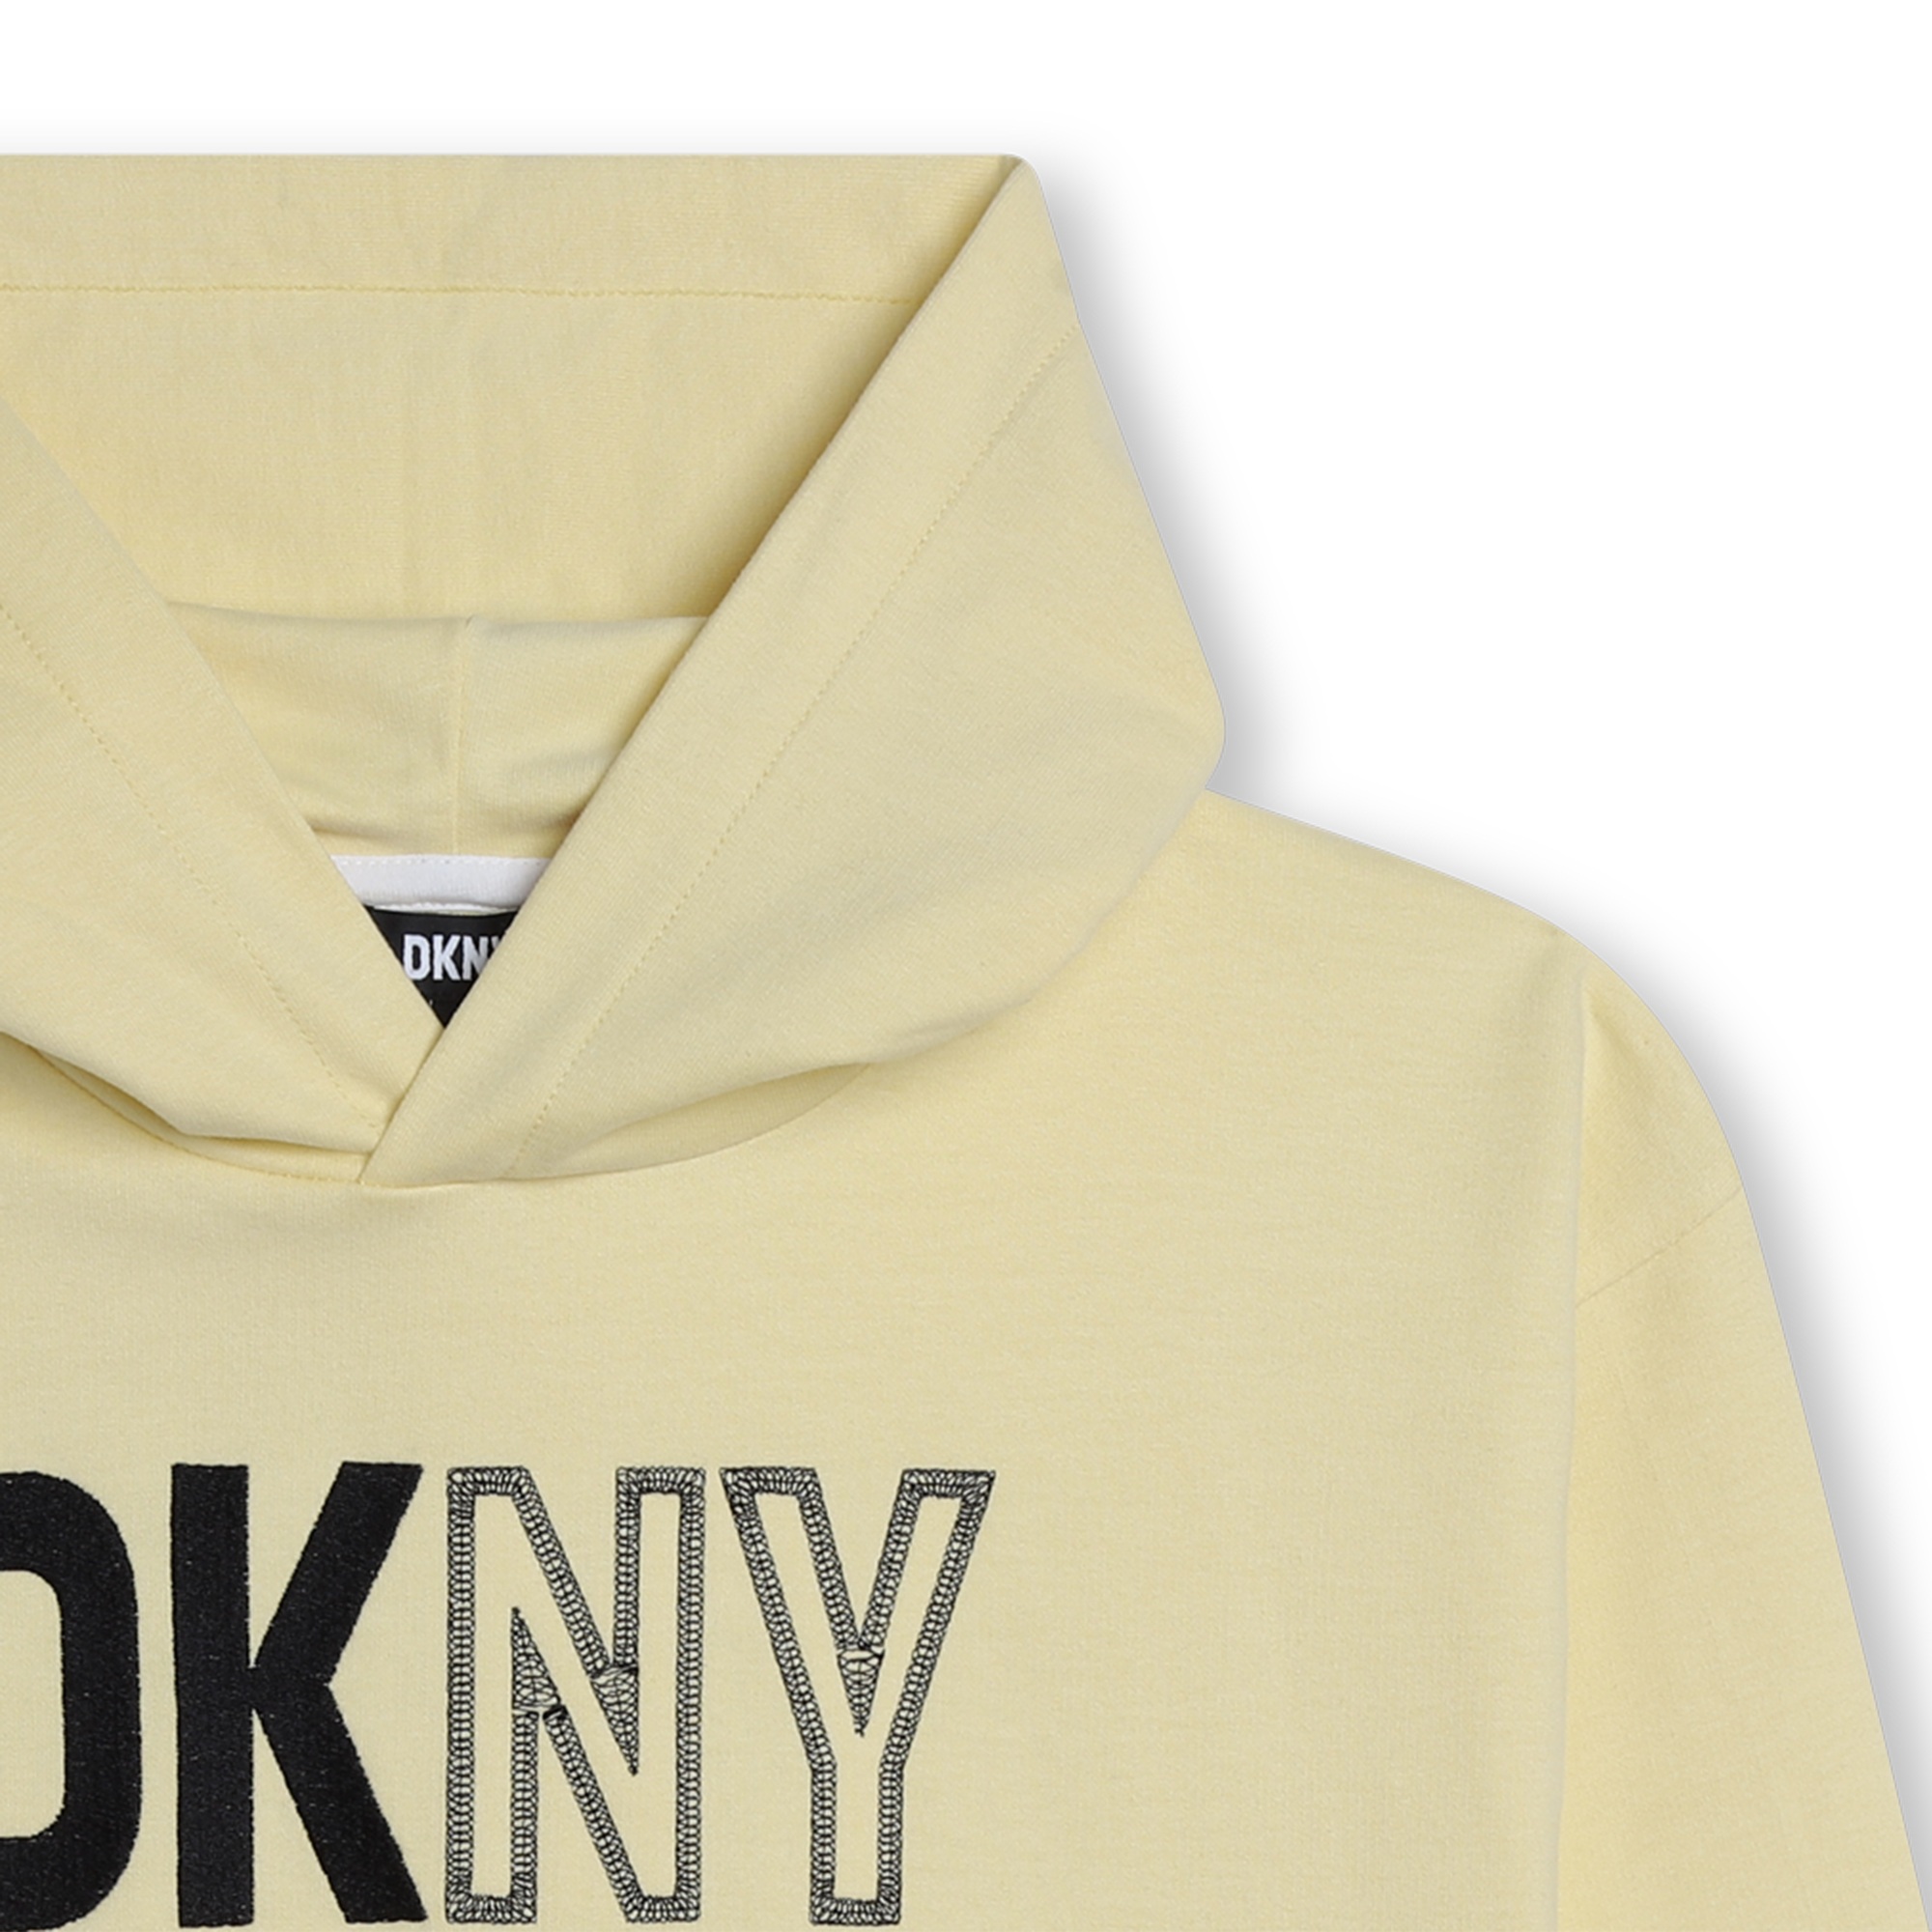 Unisex-Sweatshirt DKNY Für UNISEX